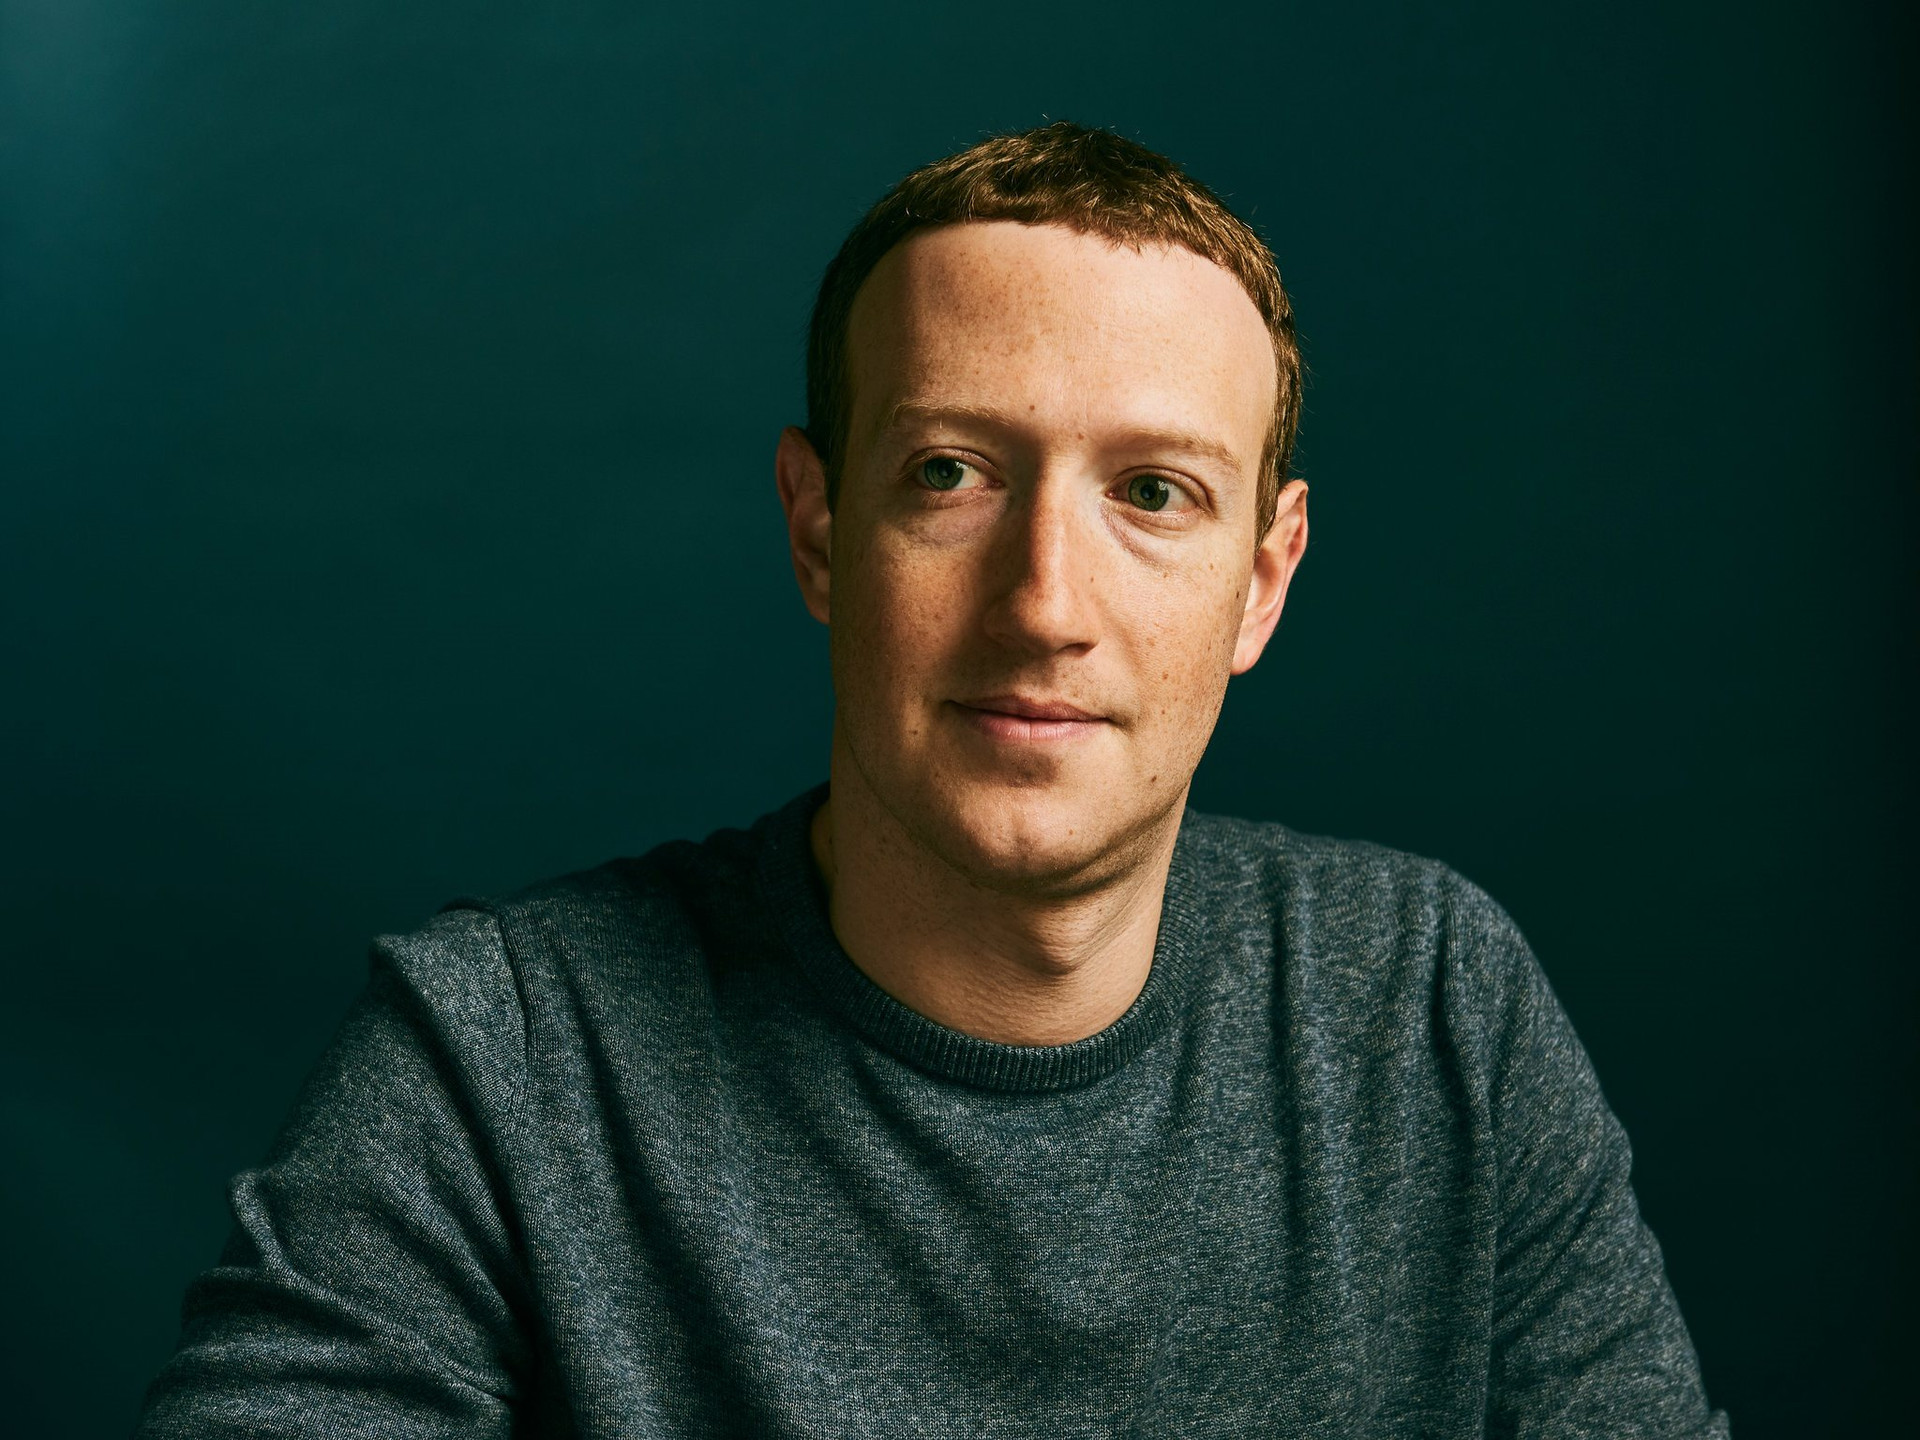 Nội bộ đạt đến đỉnh điểm của sự thất vọng, Mark Zuckerberg đi ‘quân cờ cuối’, tái khởi động ‘cỗ máy’ kiếm tiền bị bỏ quên - Ảnh 2.